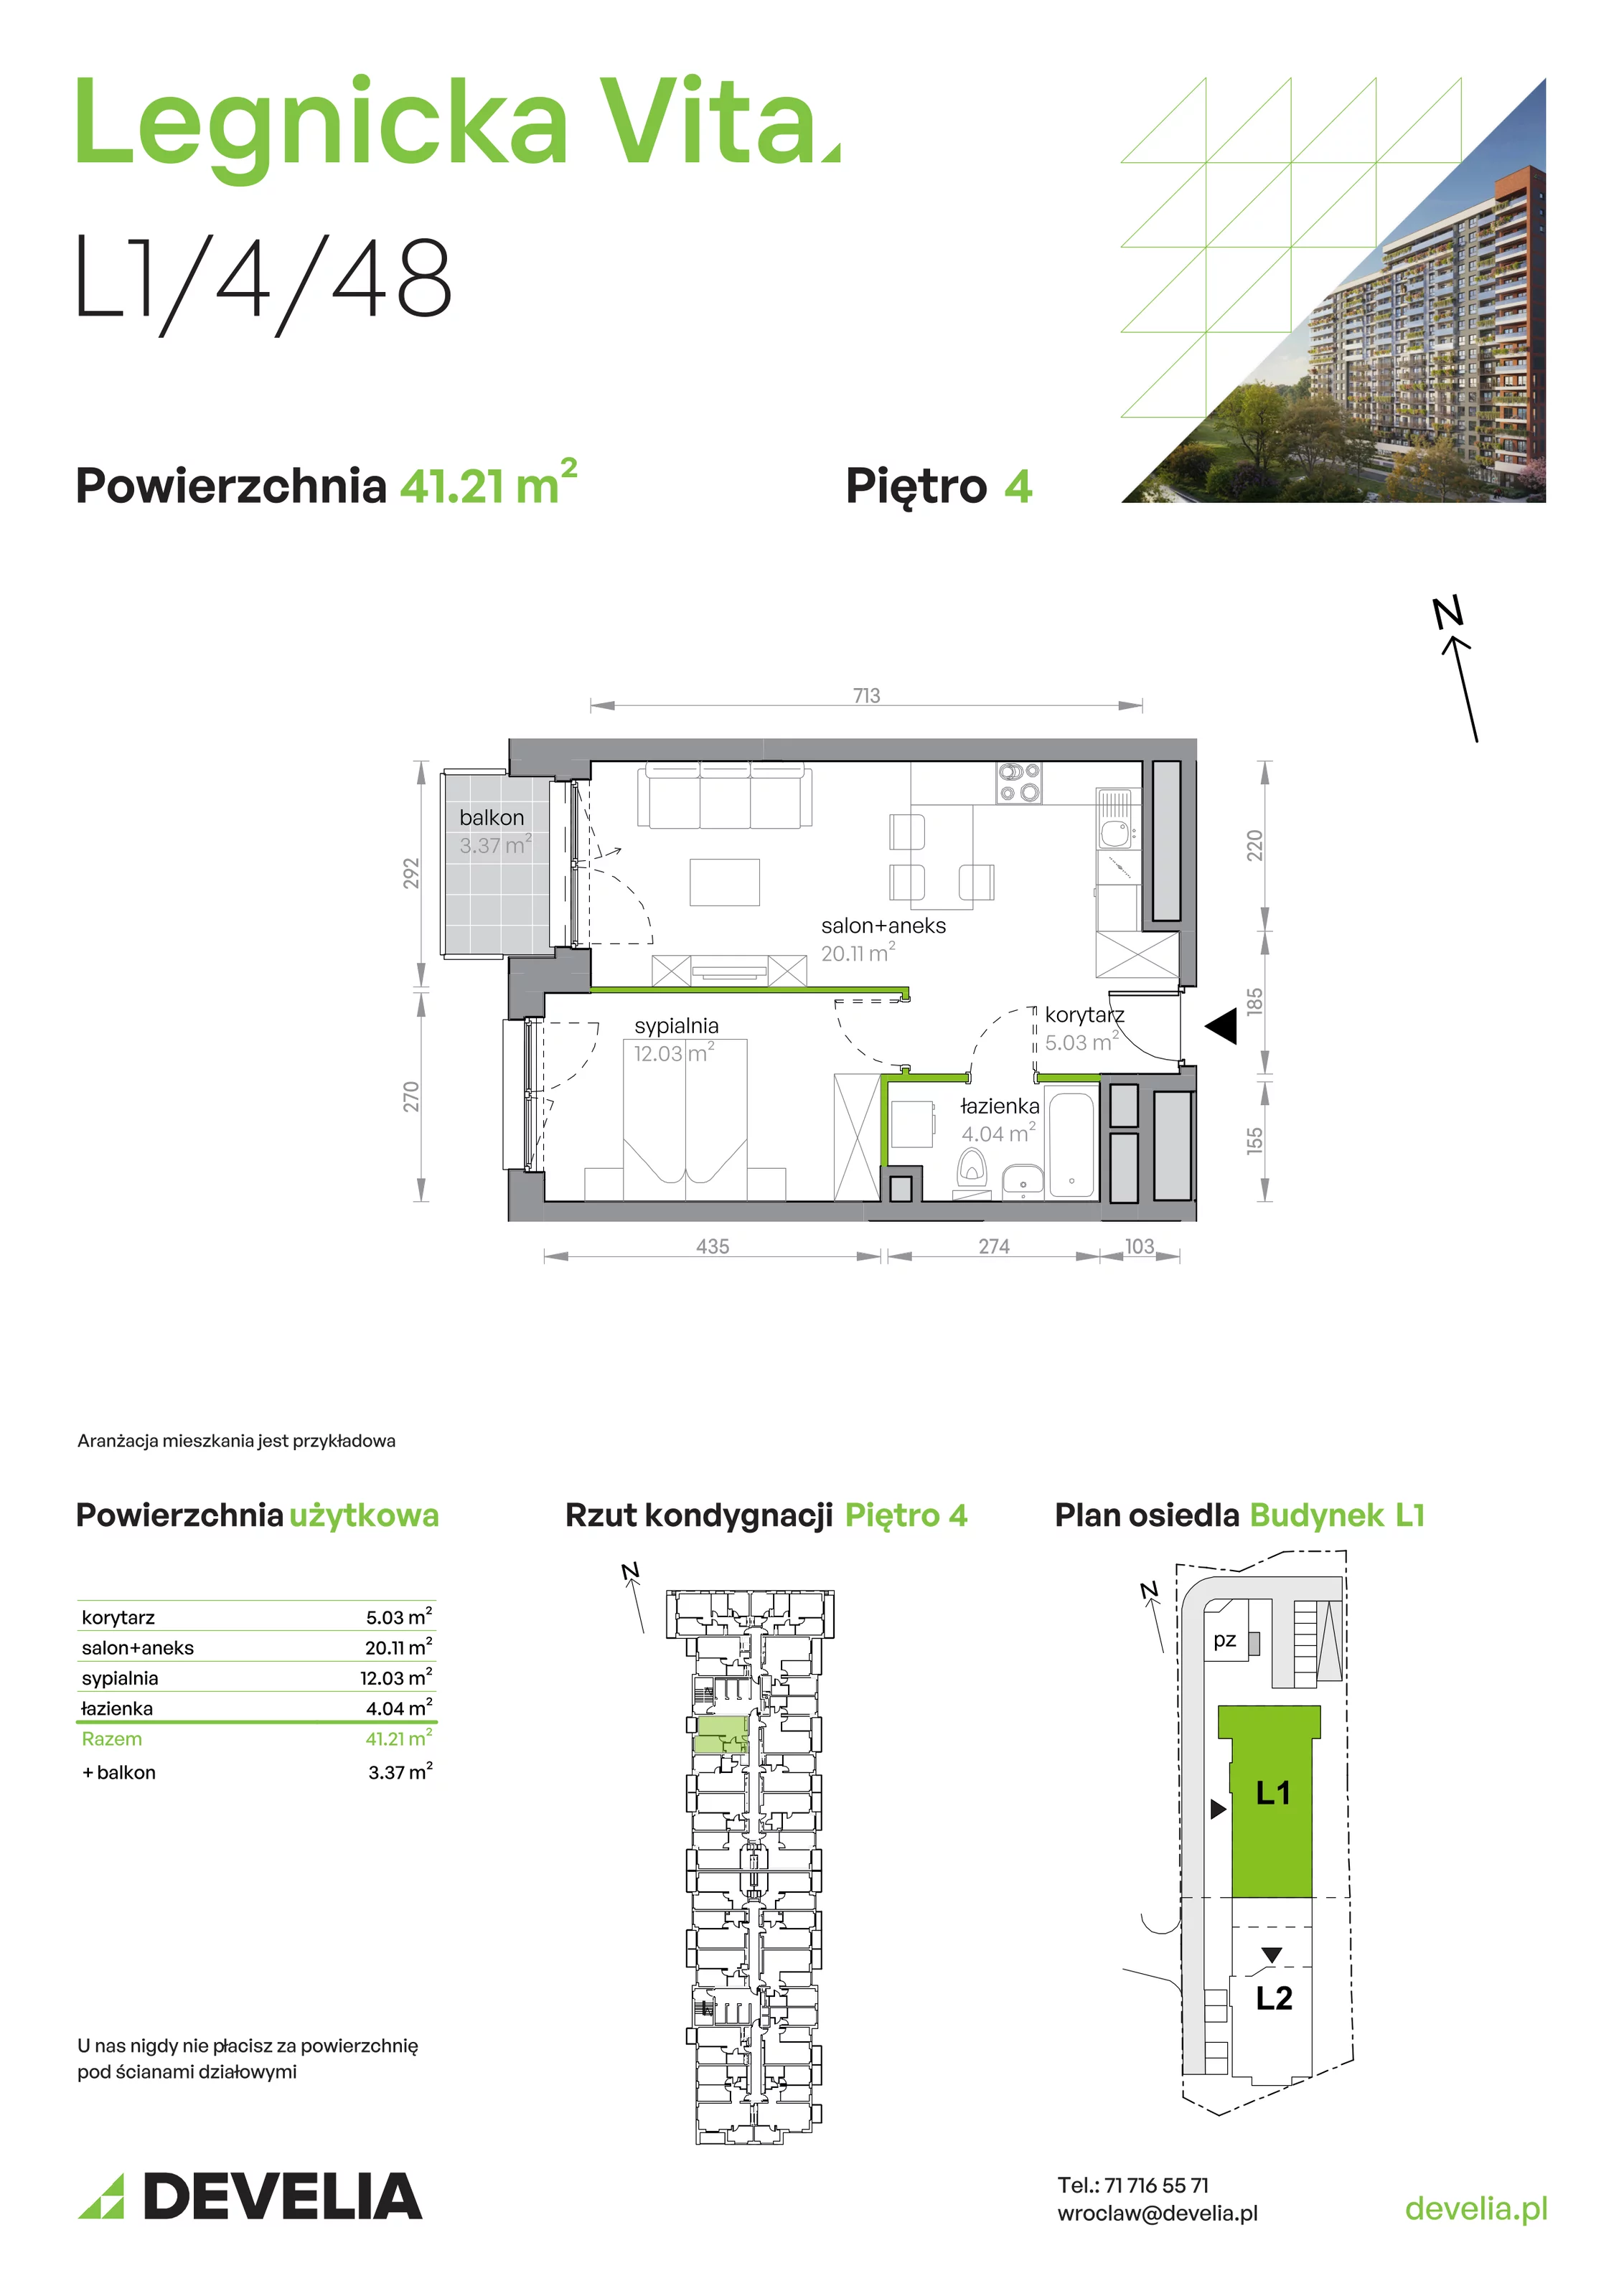 Mieszkanie 41,21 m², piętro 4, oferta nr L1/4/48, Legnicka Vita, Wrocław, Gądów-Popowice Południowe, Popowice, ul. Legnicka 52 A